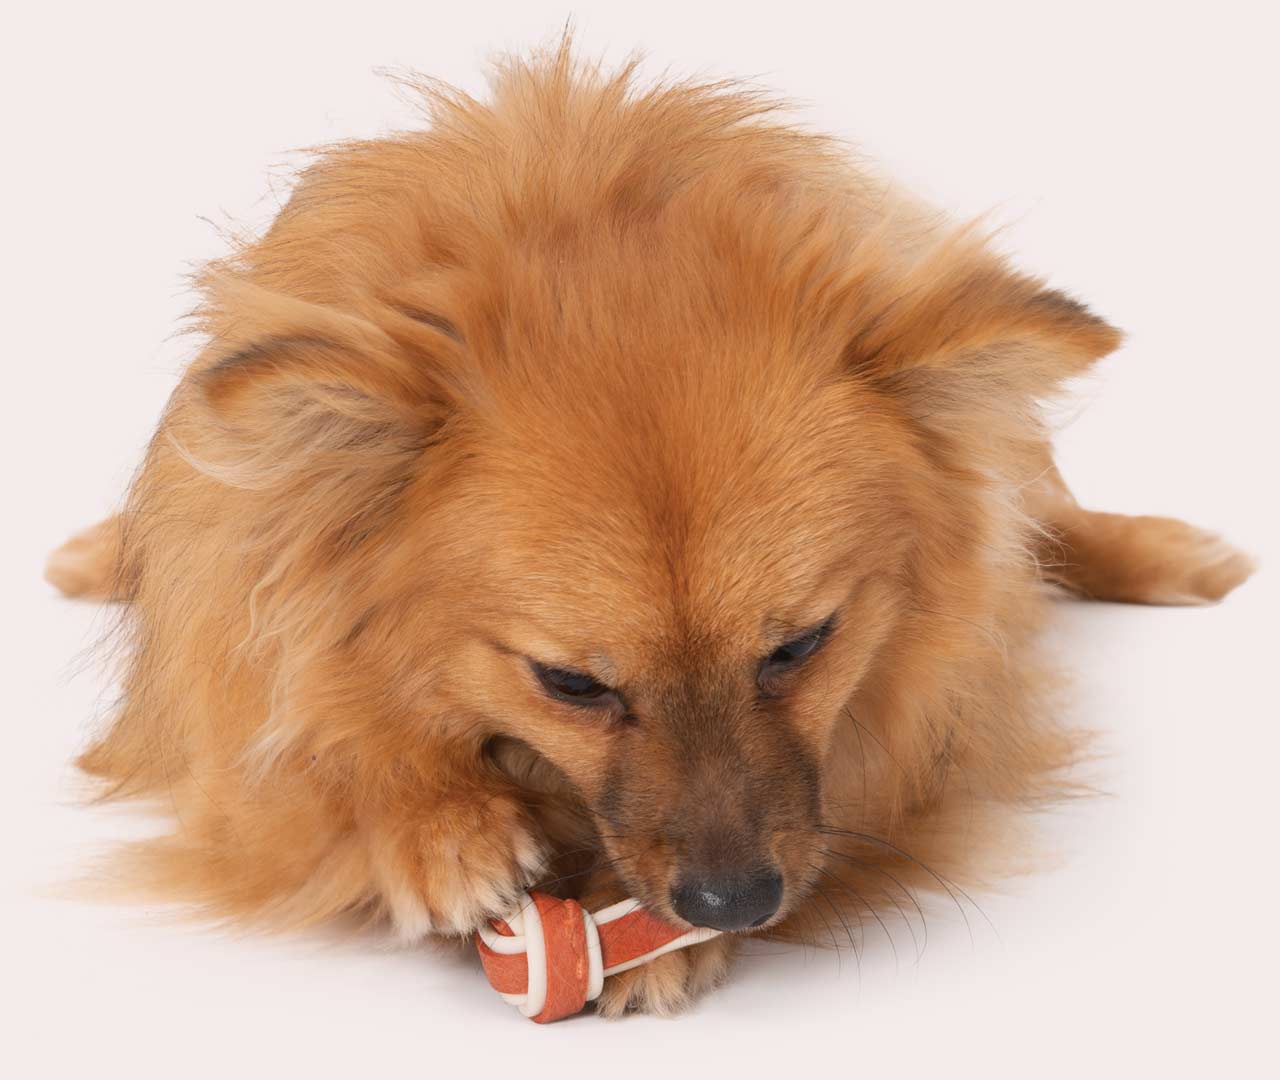 Dog eating a Zeus Better Bone